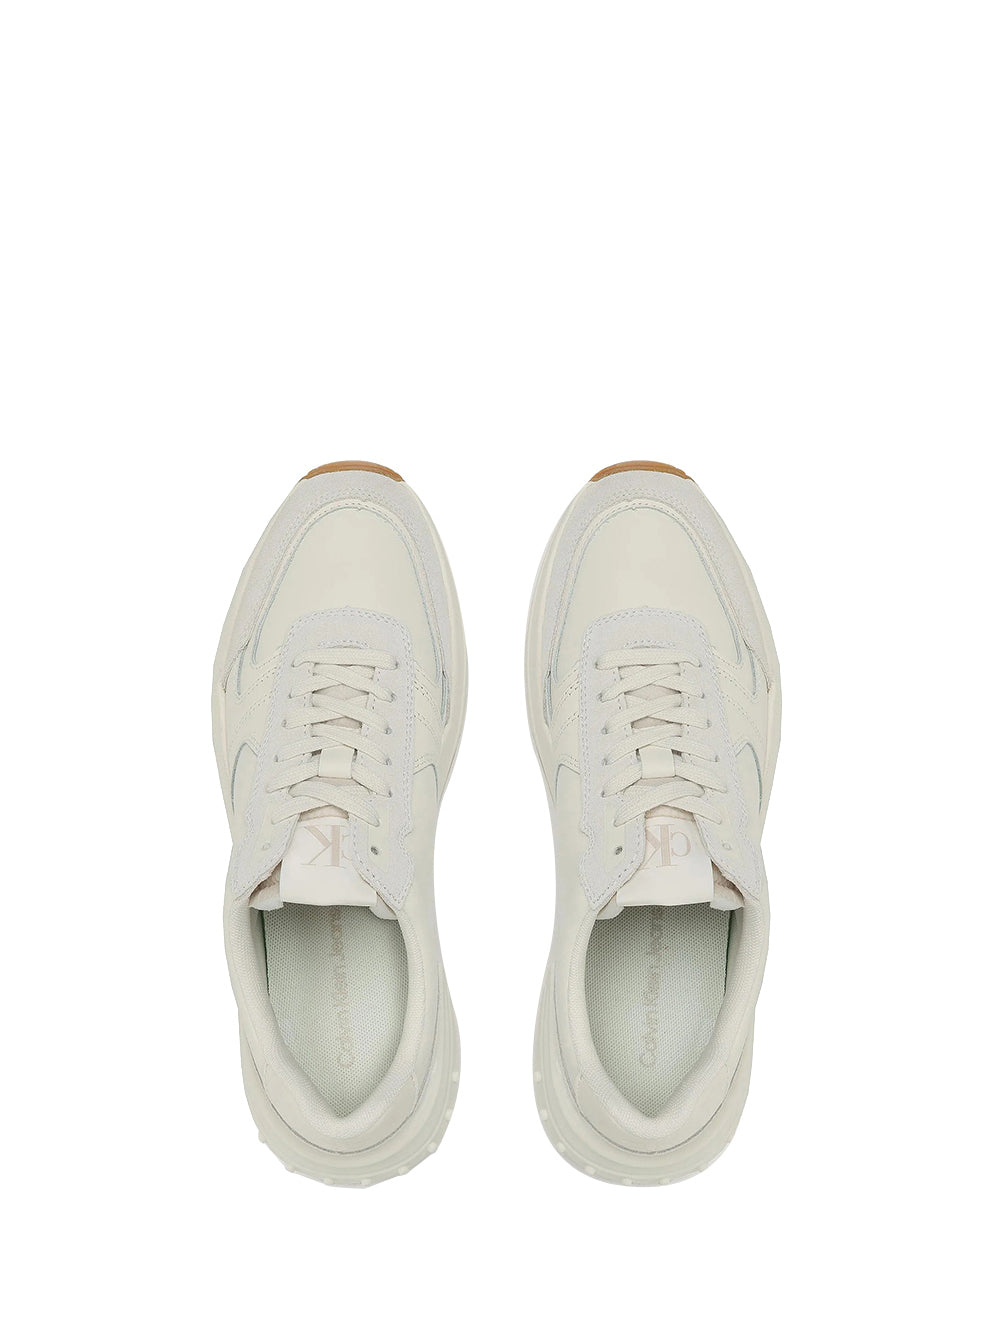 CALVIN CALZATURE 2USCITA Sneakers Uomo Bianco in pelle con logo Bianco